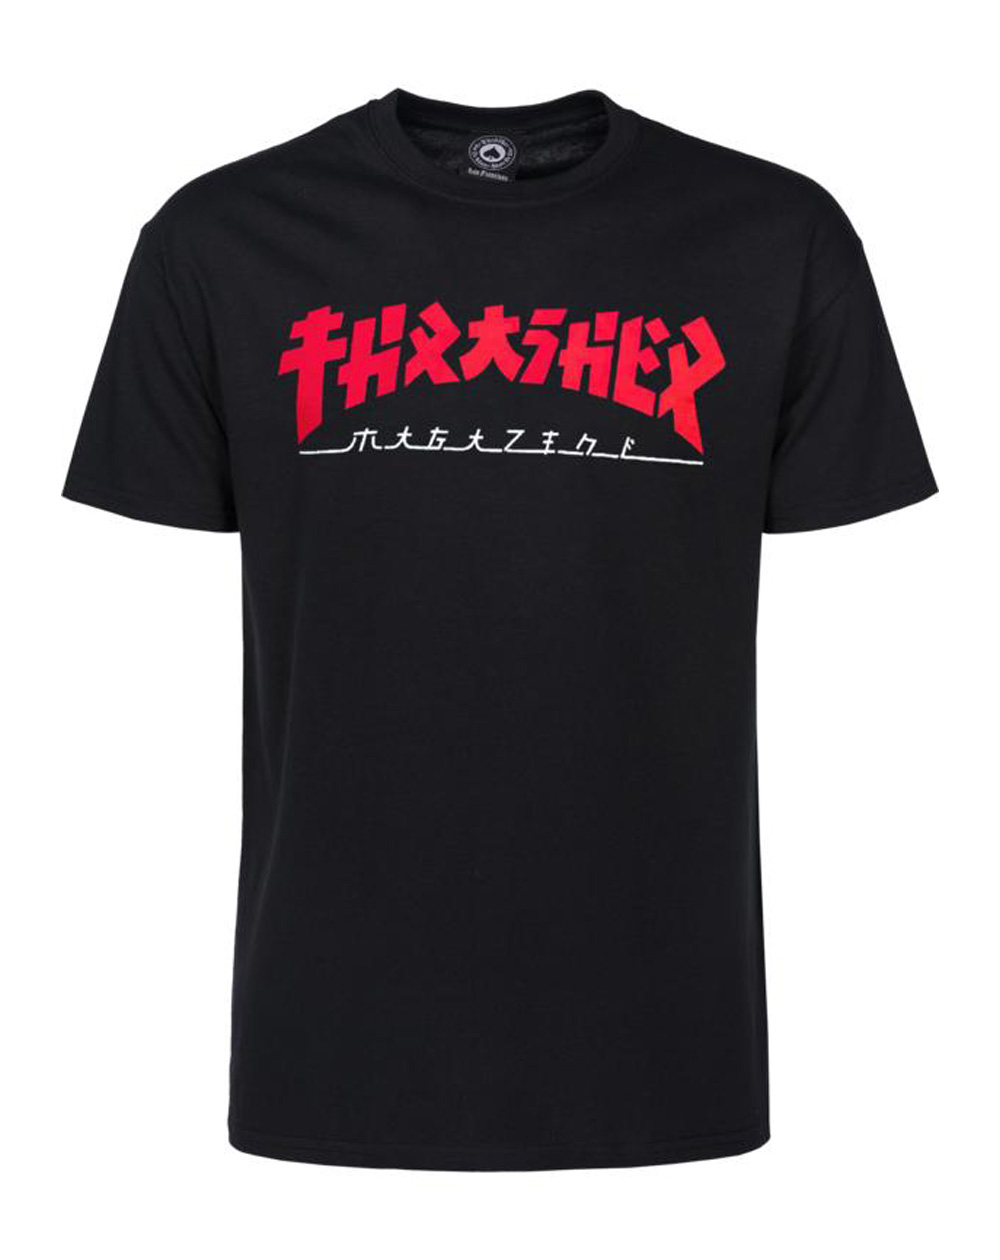 Thrasher Godzilla Camiseta para Hombre Black